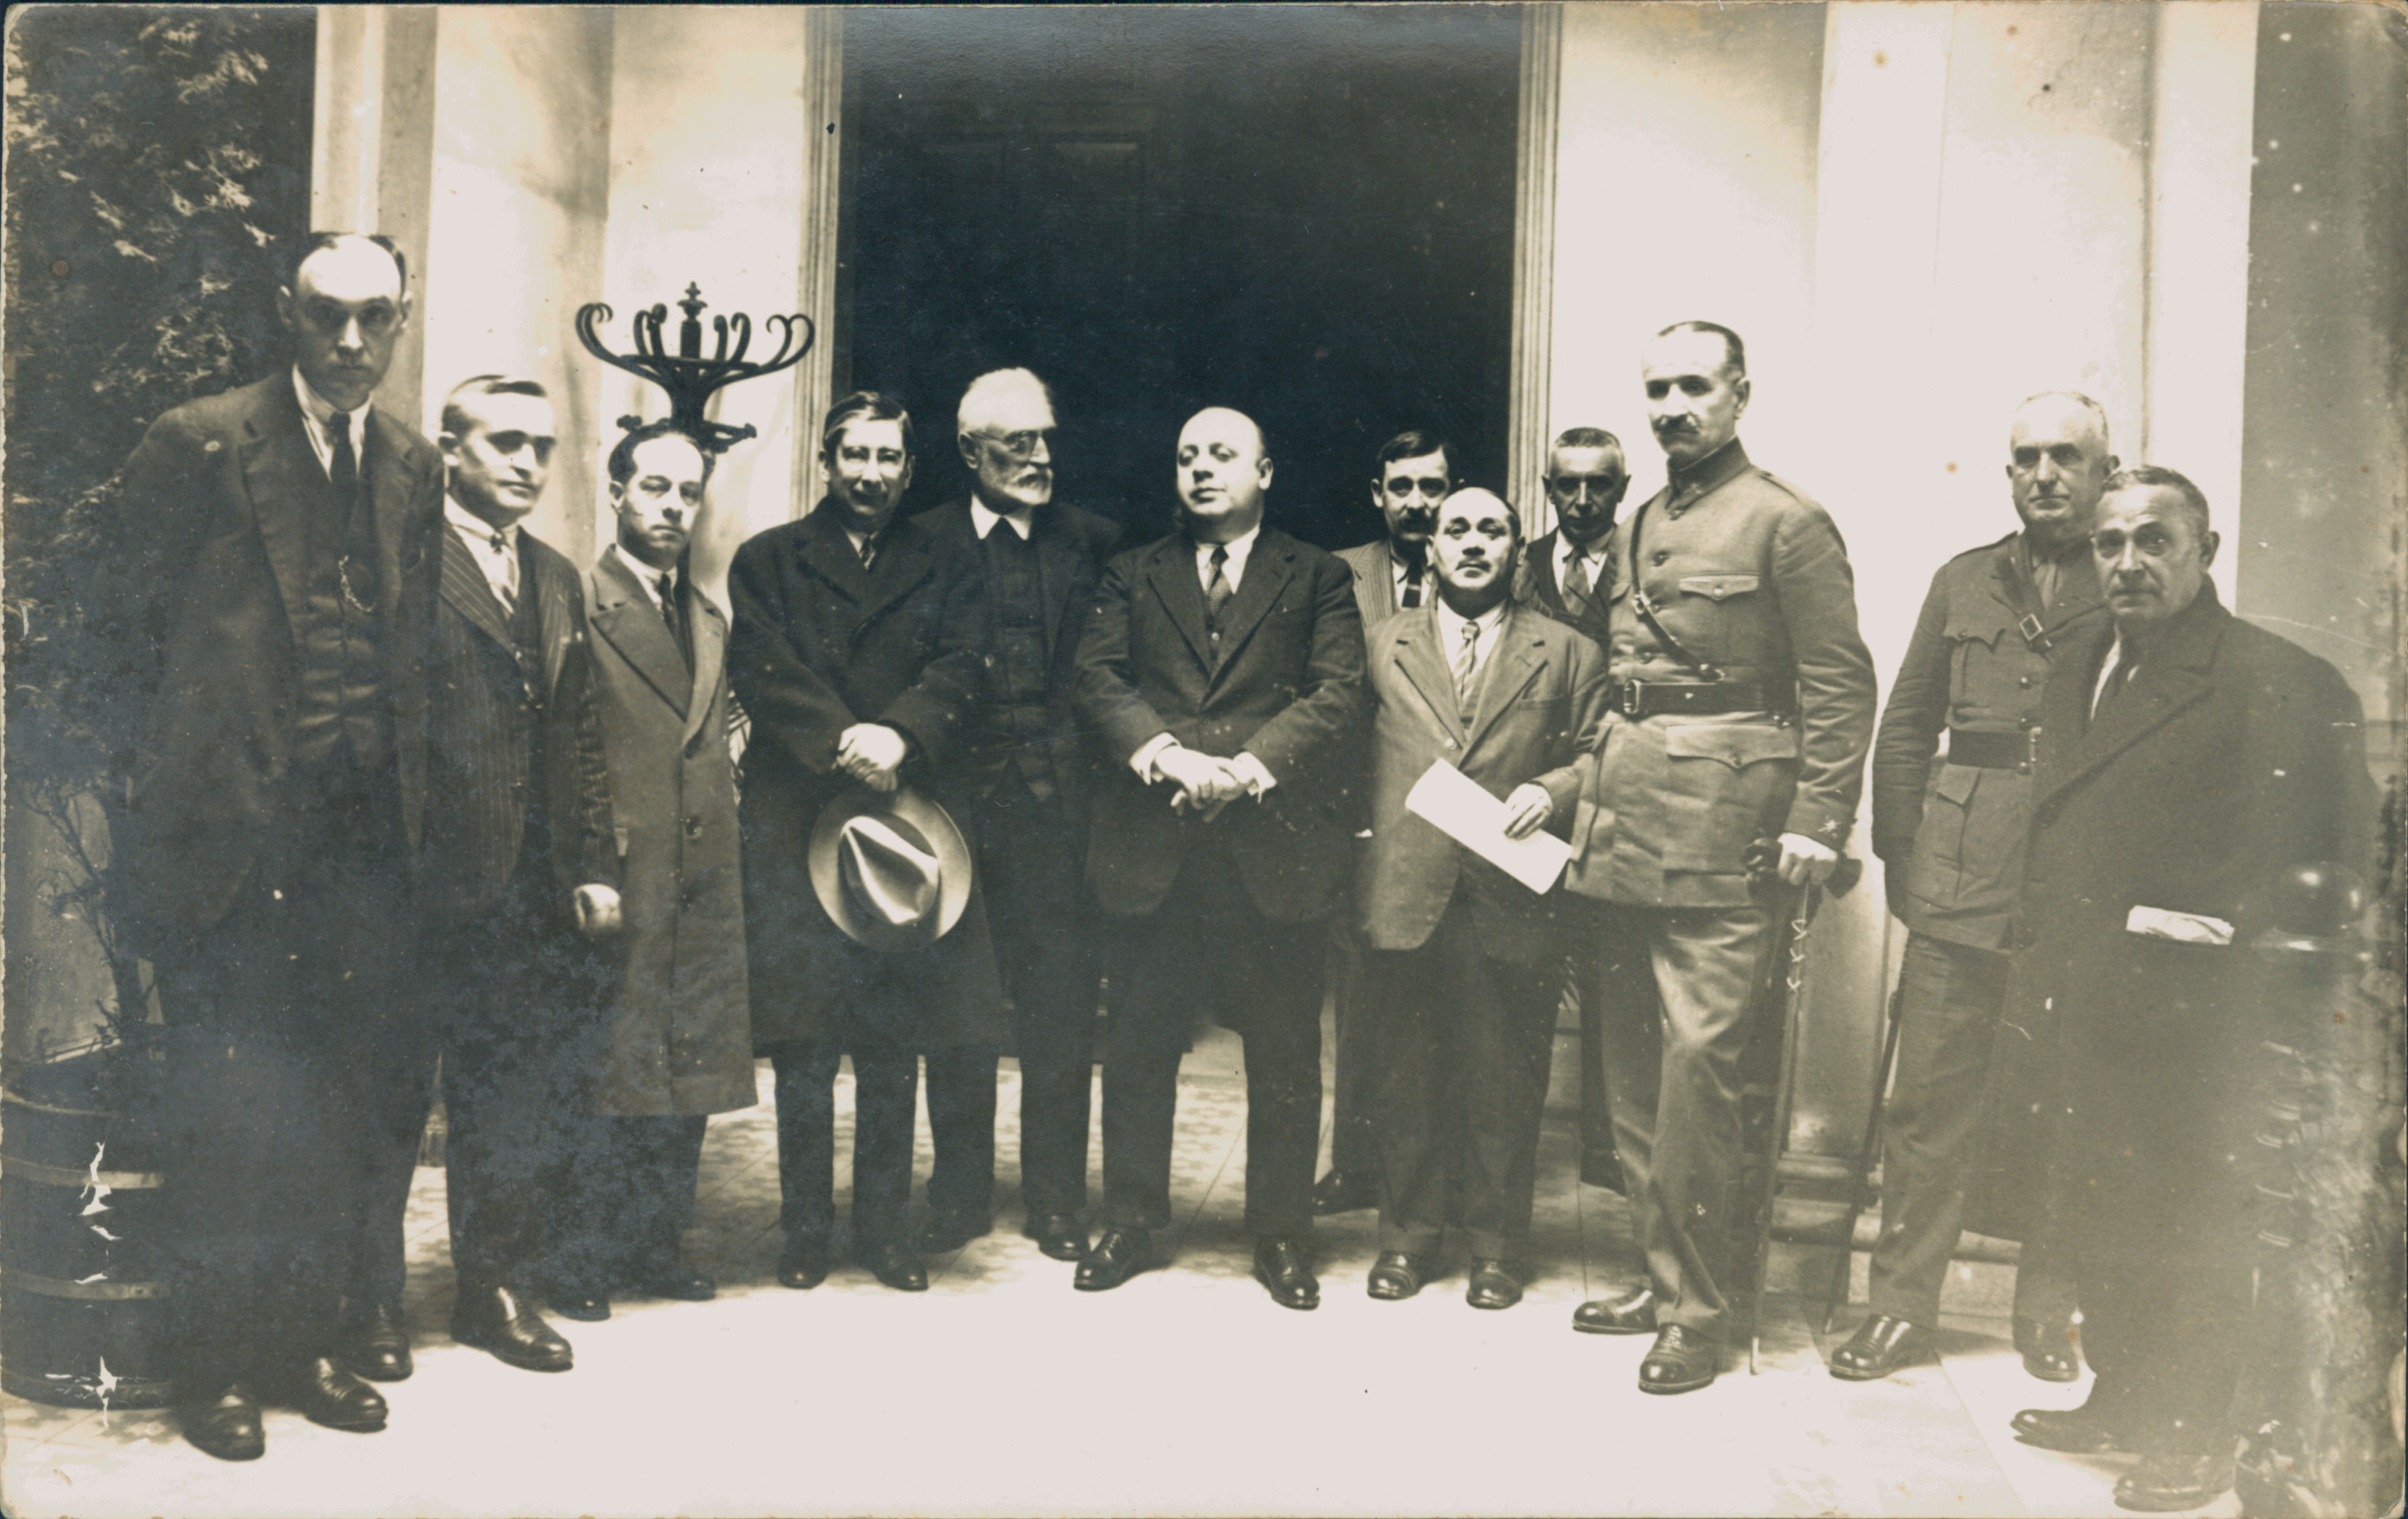 La proclamación de la II República en Eibar: conferencia del historiador Jesús Gutiérrez en el Instituto de Eibar